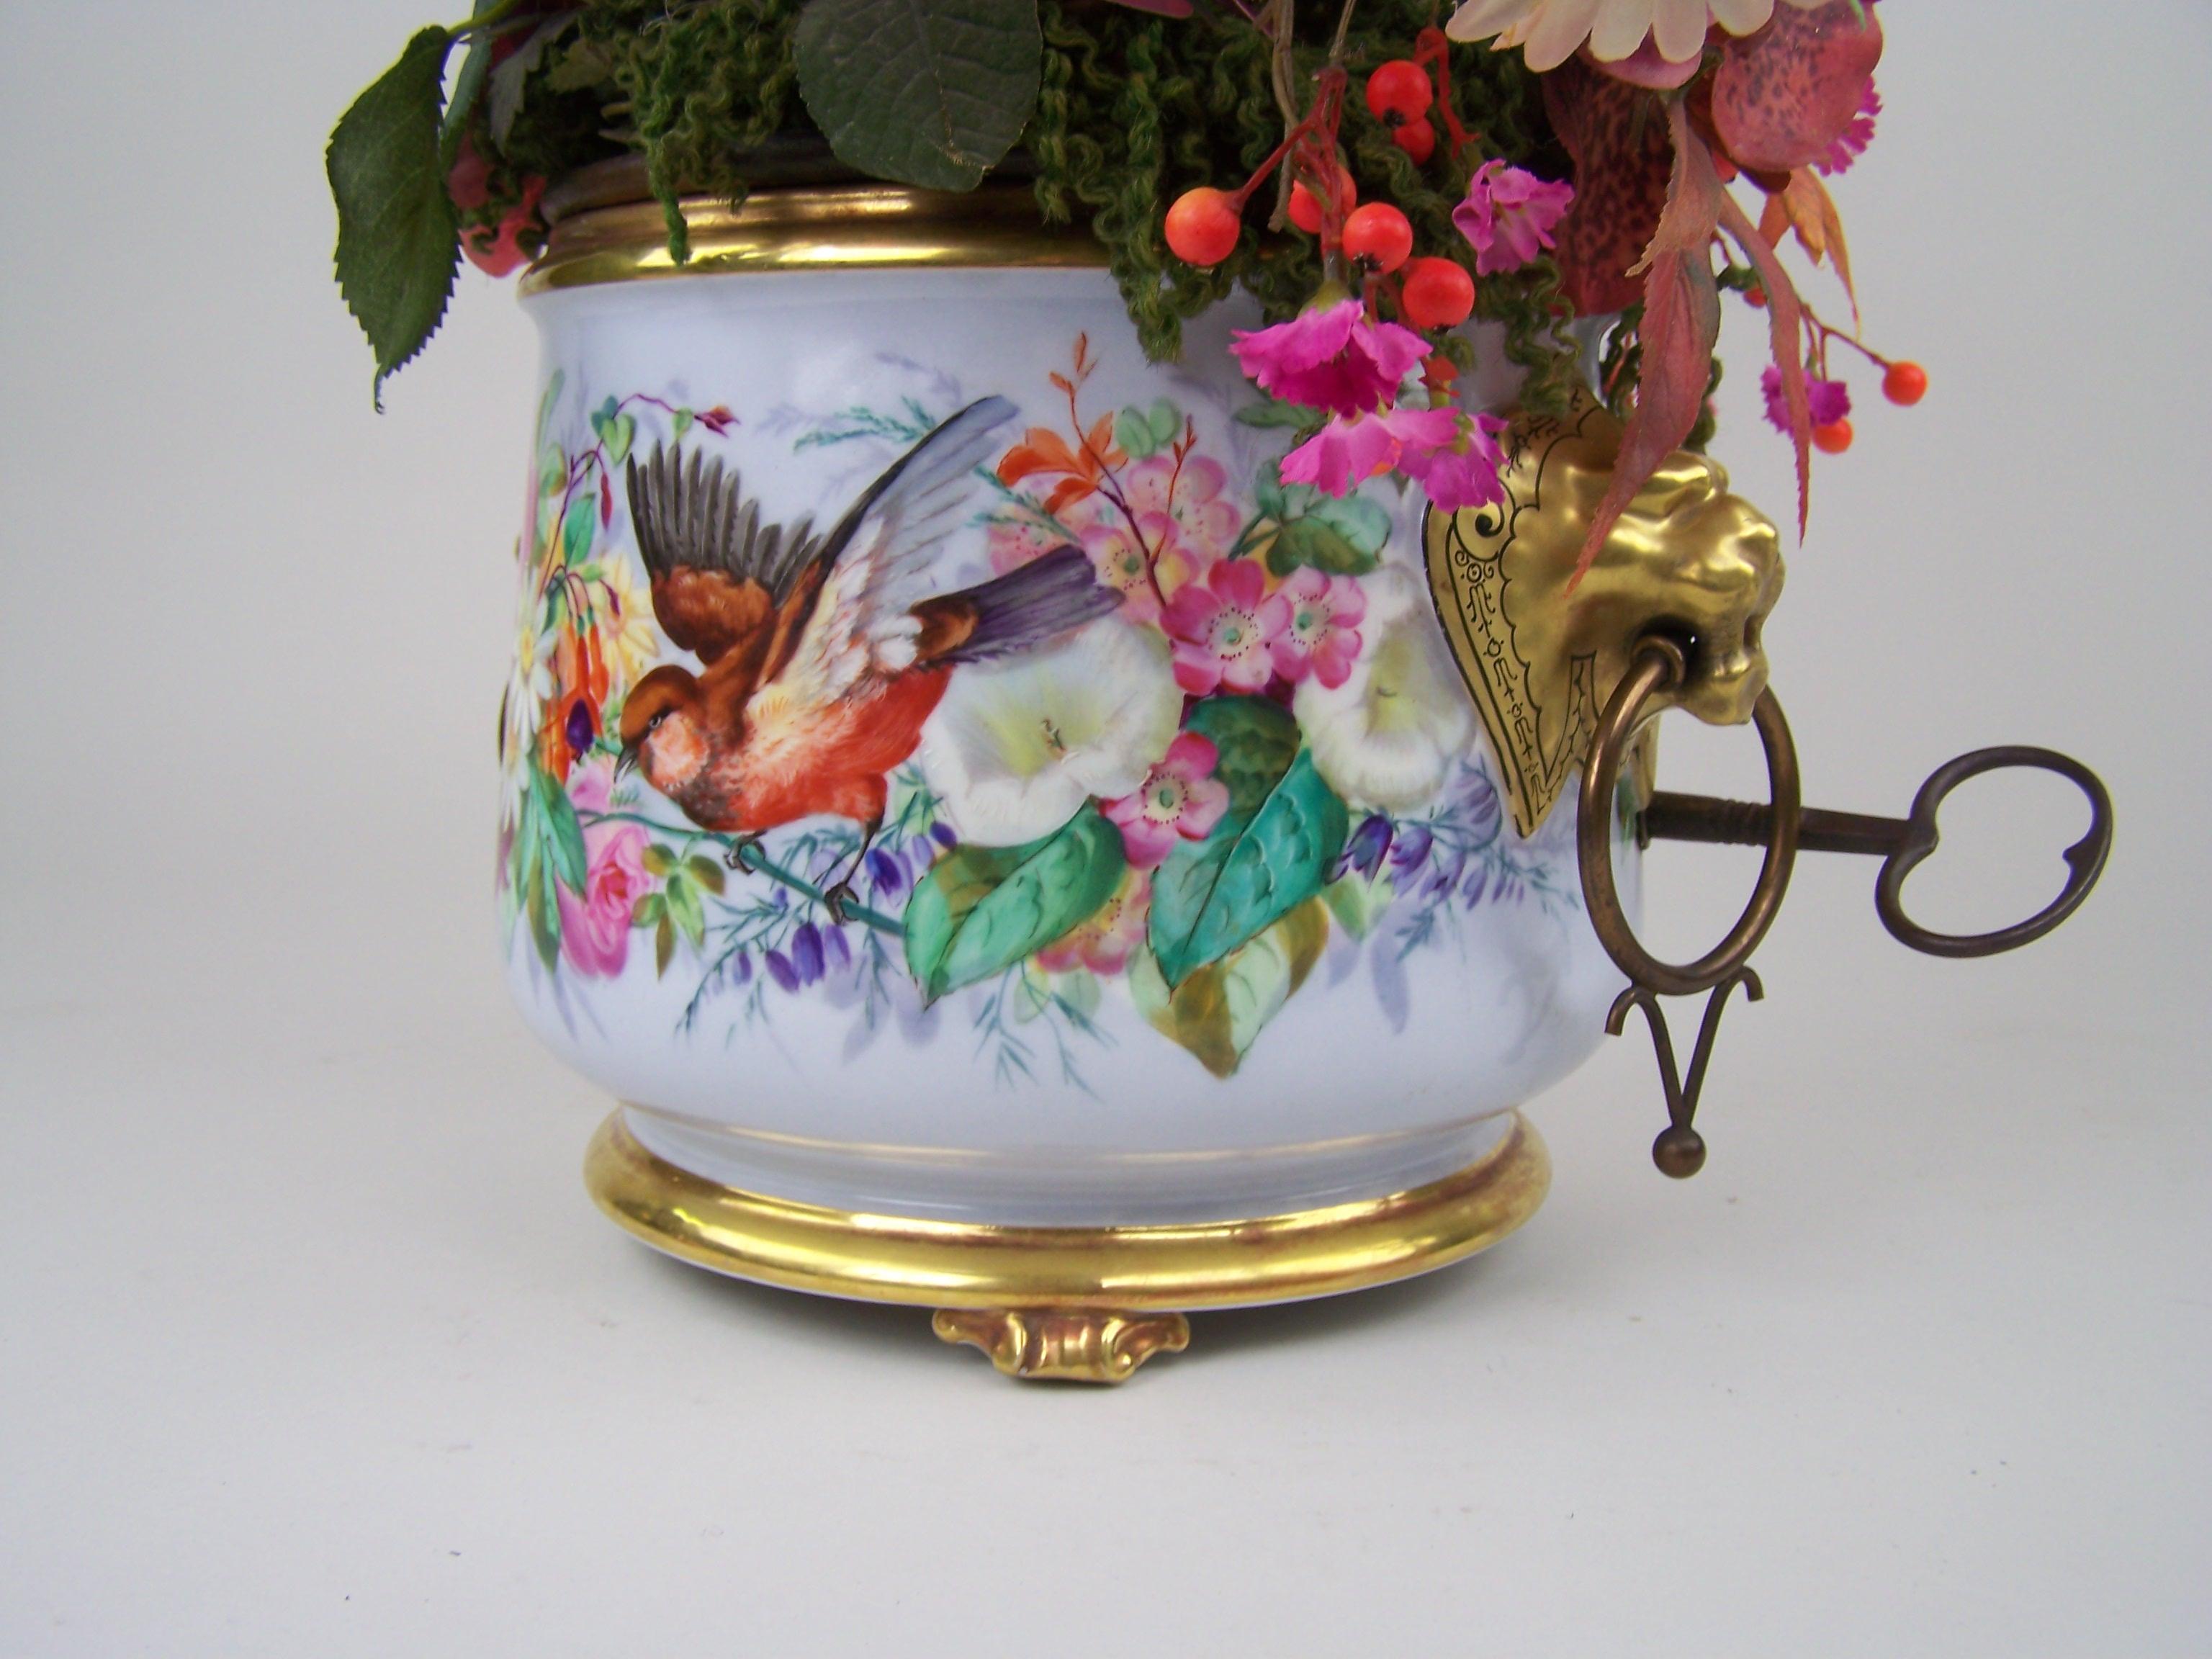 Pot de fleurs unique avec automate d'oiseaux chanteurs réalisé par Bontems dans le dernier quart du 19e siècle.

Bontems était un fabricant d'automates à oiseaux à Paris. Il a produit un nombre appréciable de nichoirs et de cages à oiseaux